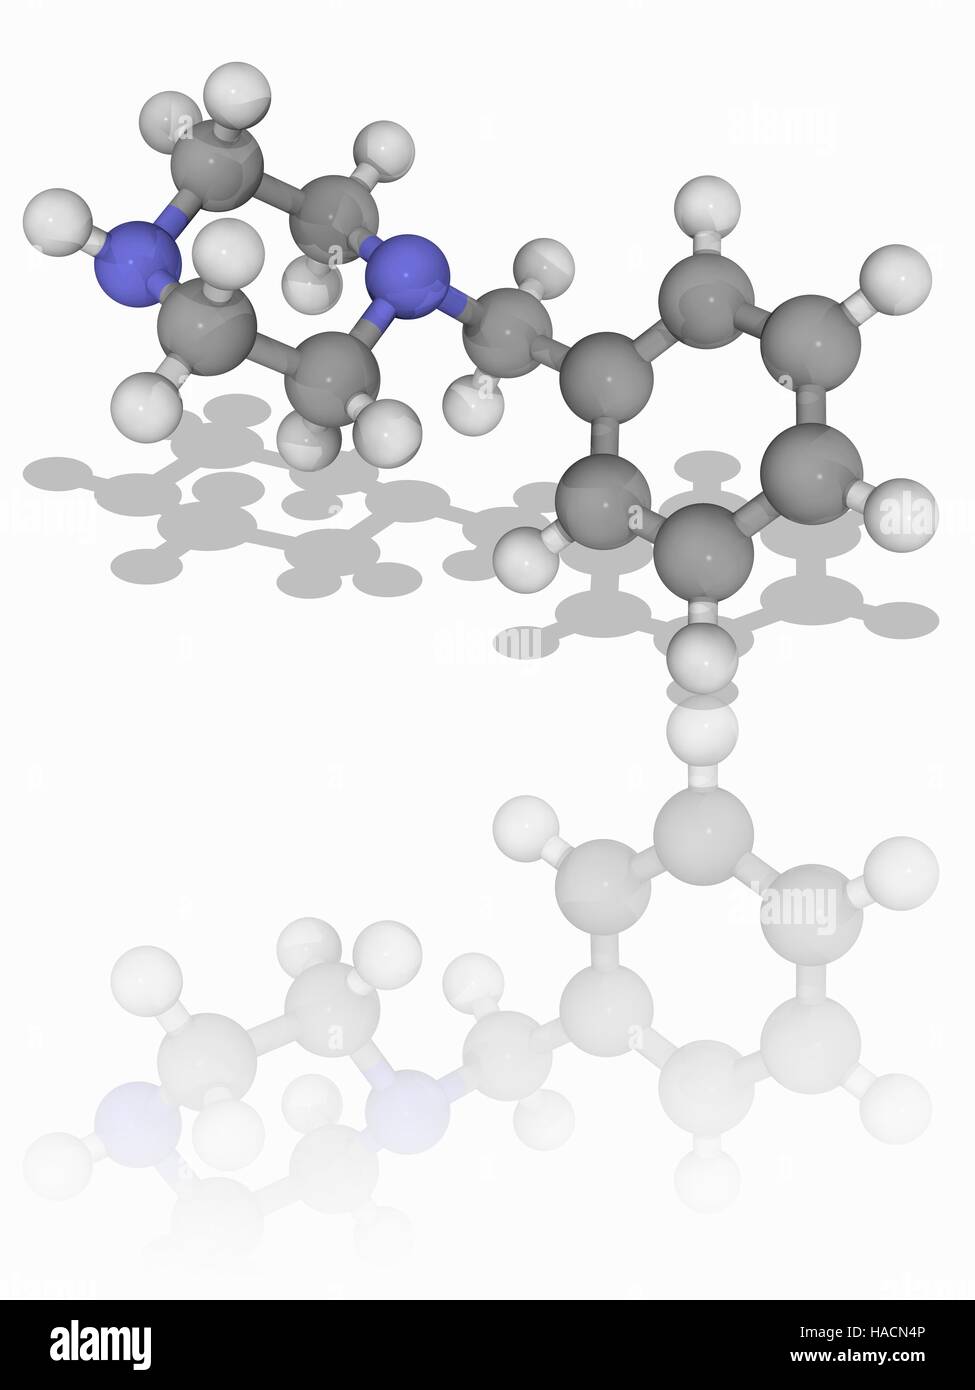 Benzylpiperazin. Molekulares Modell des Drogen-Benzylpiperazin (BZP, C11. H16. (N2). Dieses Medikament hat euphorische und stimulierende Eigenschaften. Es ist in einigen Ländern verboten. Atome als Kugeln dargestellt werden und sind farblich gekennzeichnet: Kohlenstoff (grau), Wasserstoff (weiß) und Stickstoff (blau). Abbildung. Stockfoto